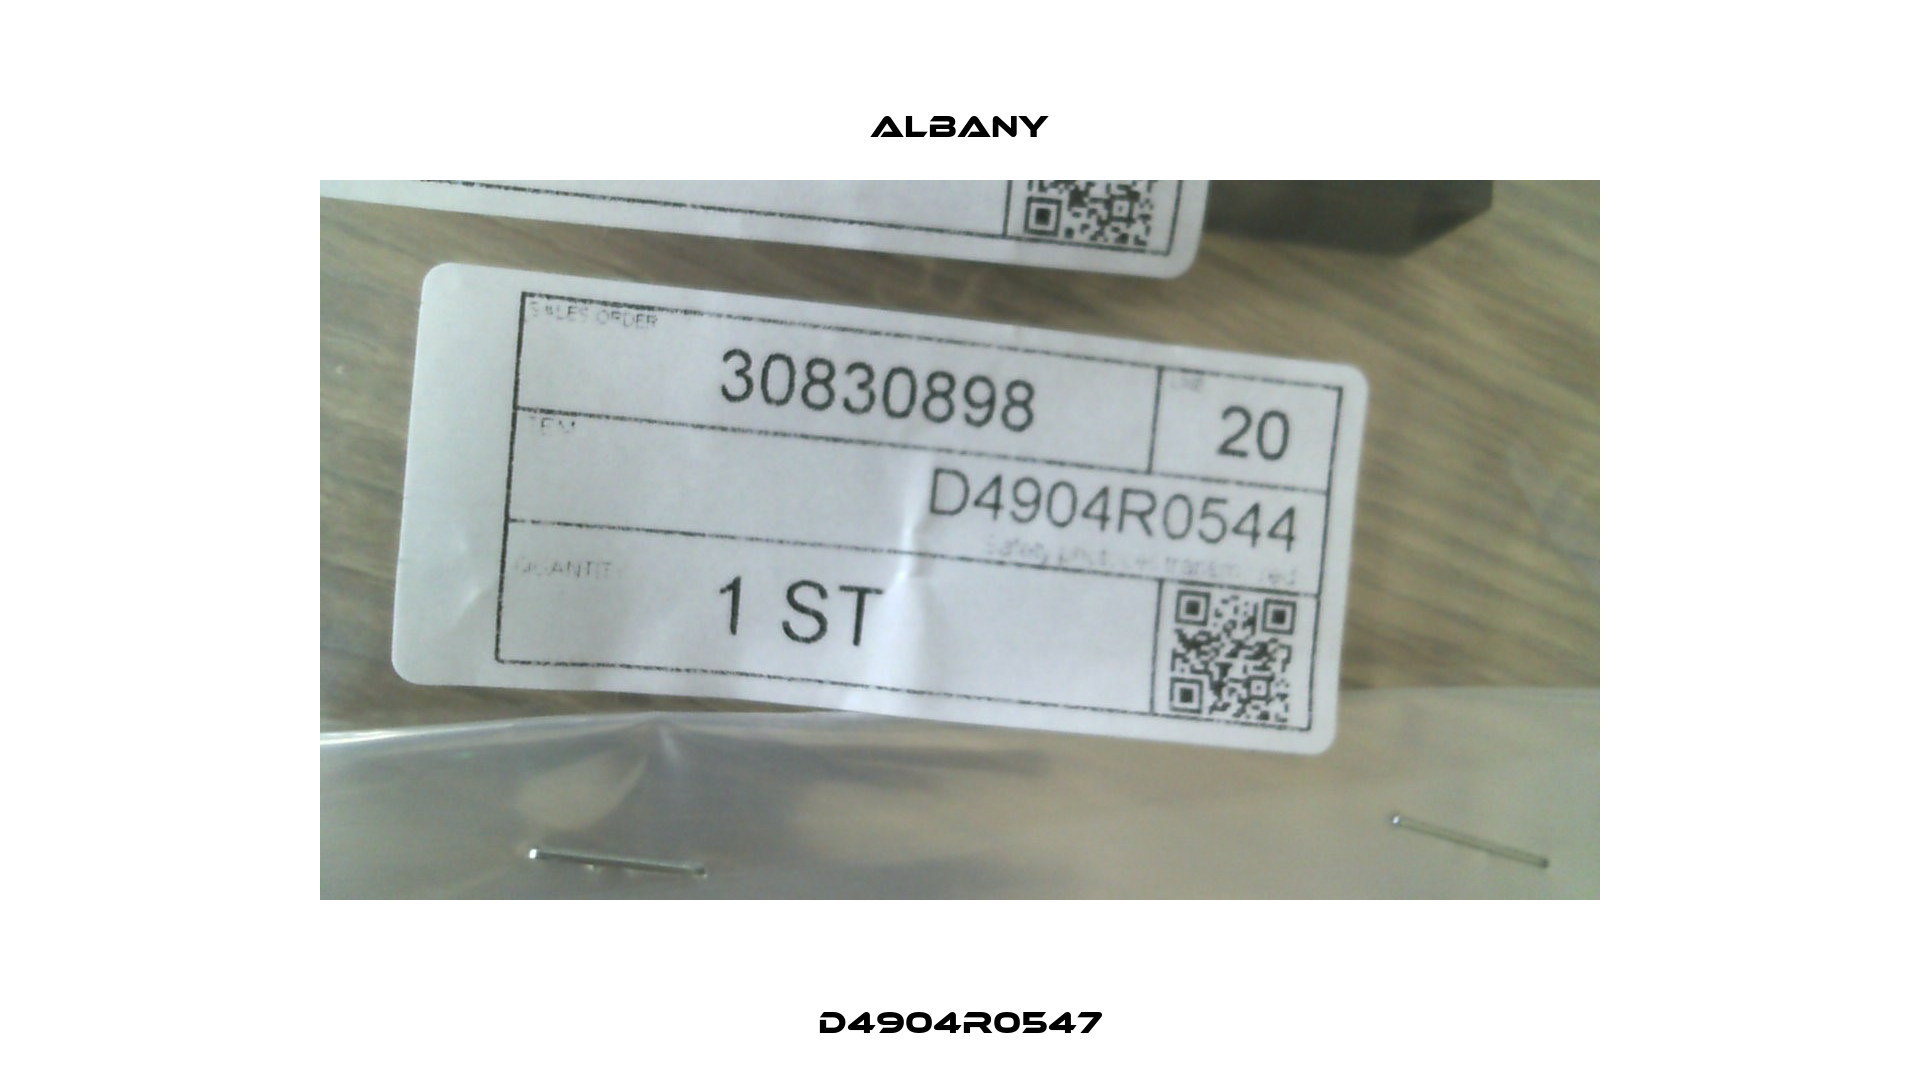 D4904R0547 Albany